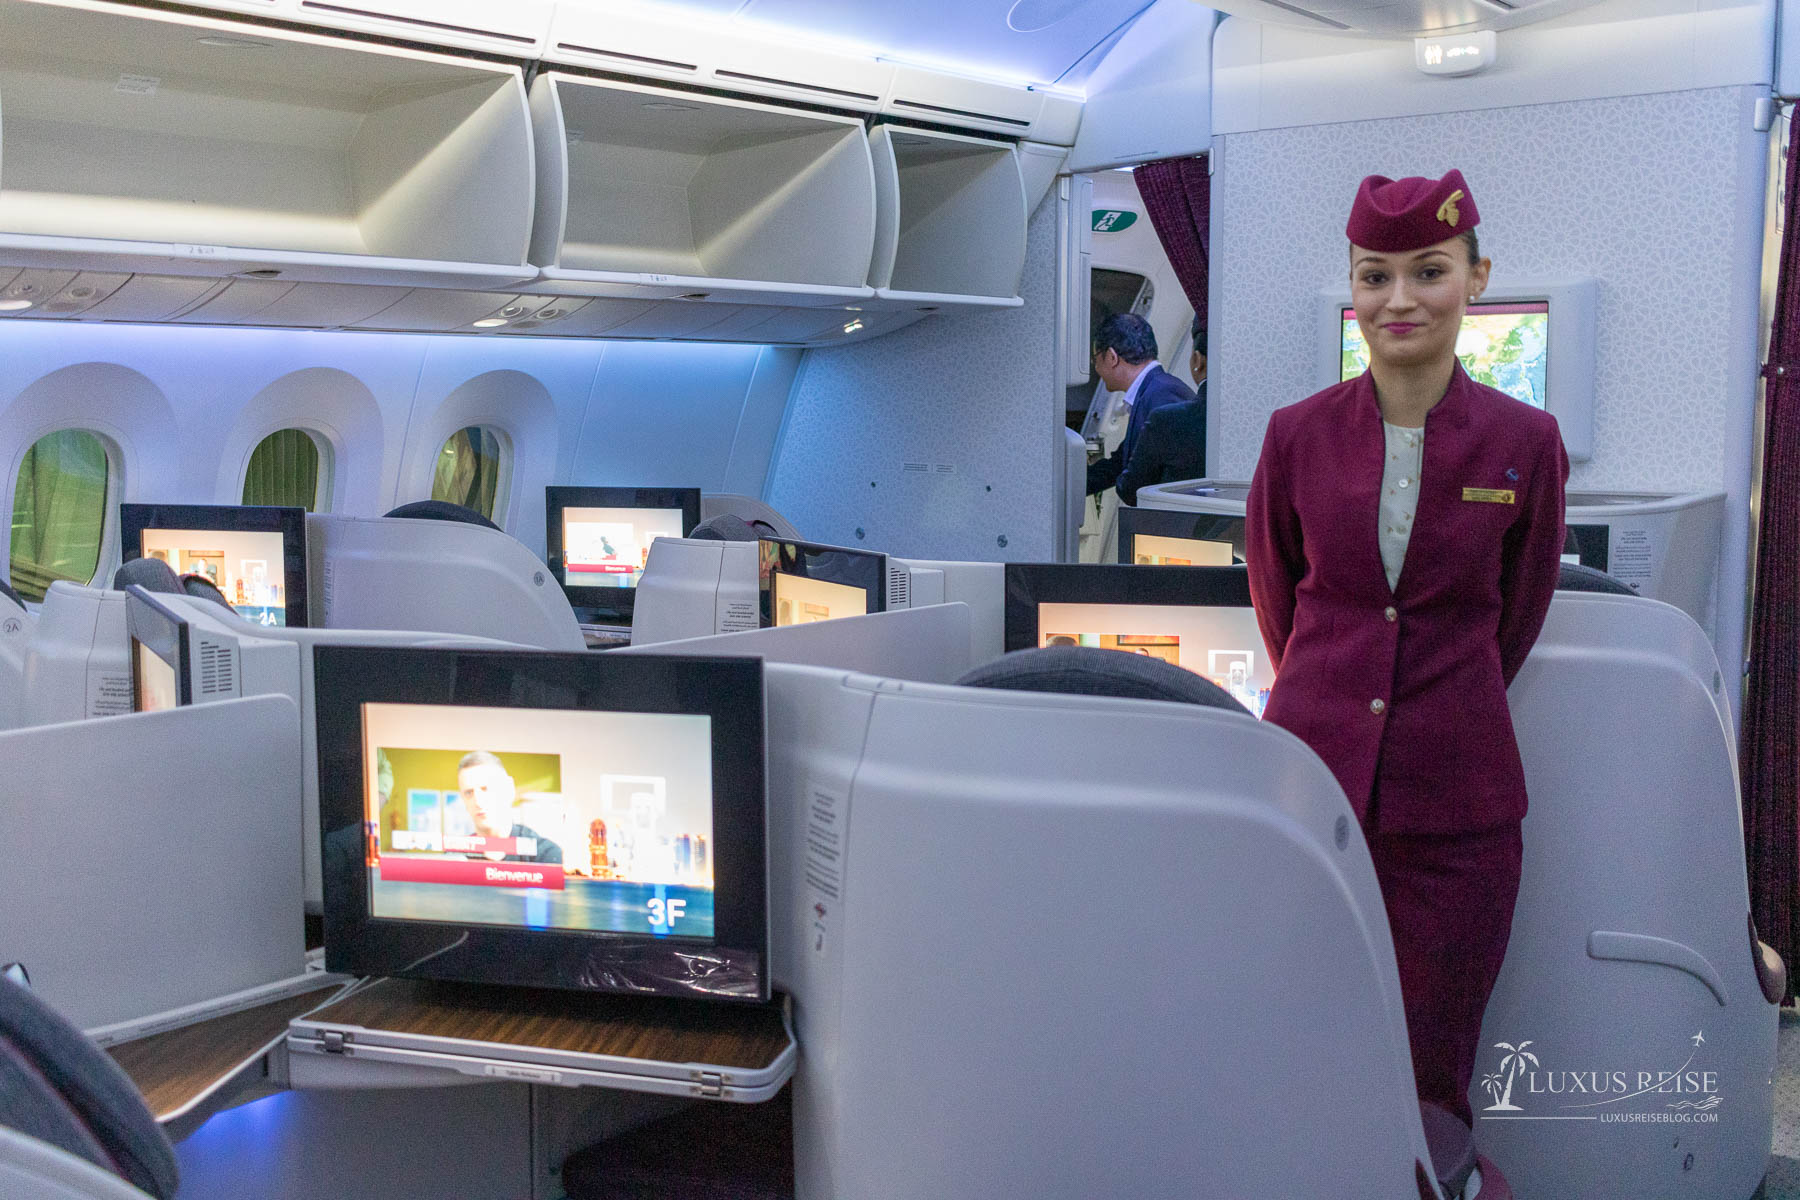 Qatar-Airways Inaugural Flight QR994 Doha to Da Nang - Business Class - Lounge Review - Erfahrung an Bord